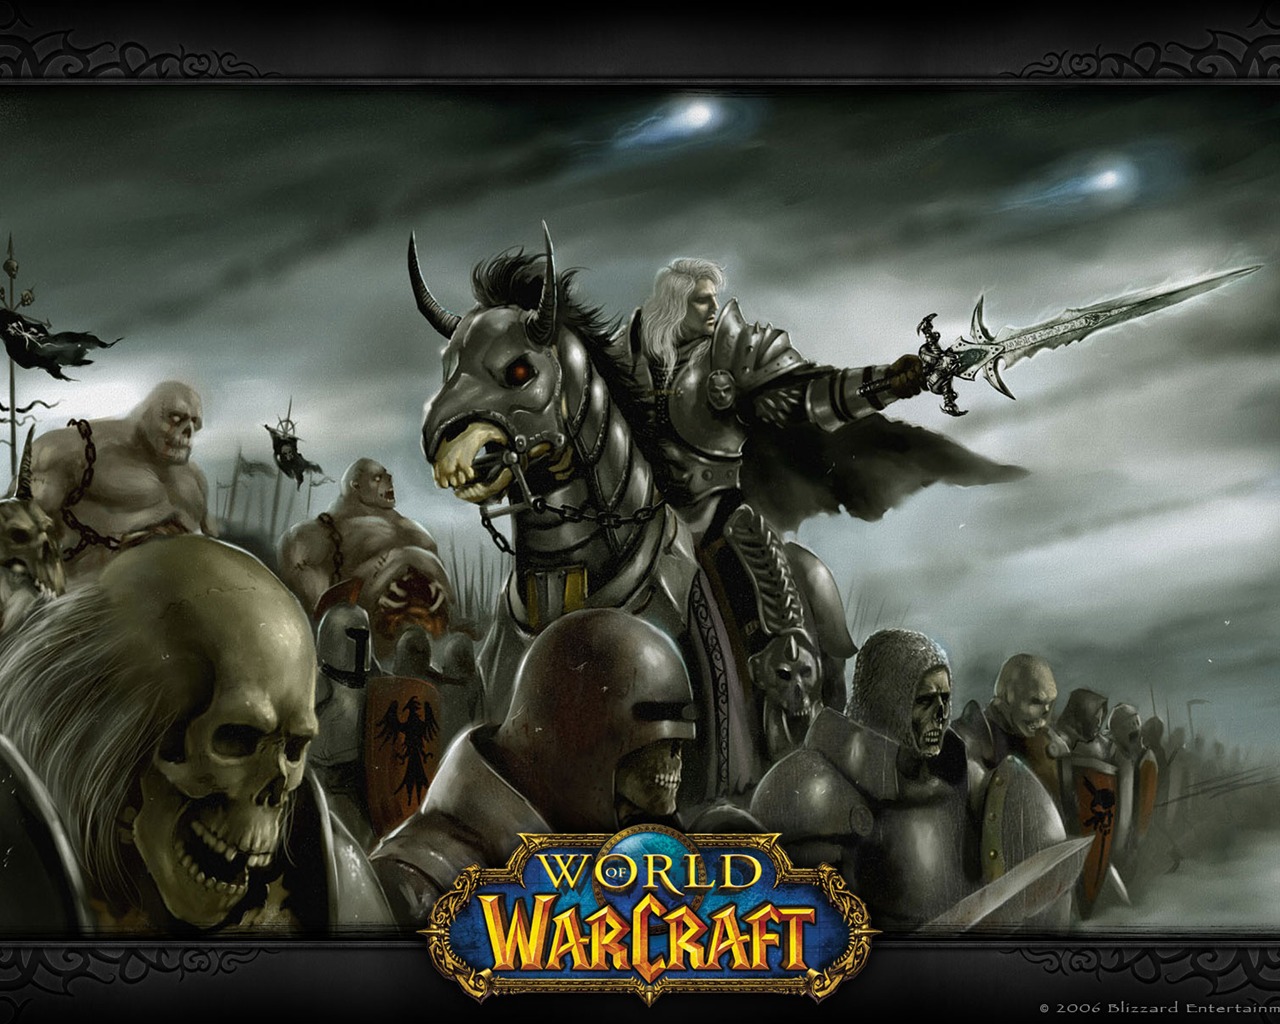 World of Warcraft 魔獸世界高清壁紙(二) #3 - 1280x1024